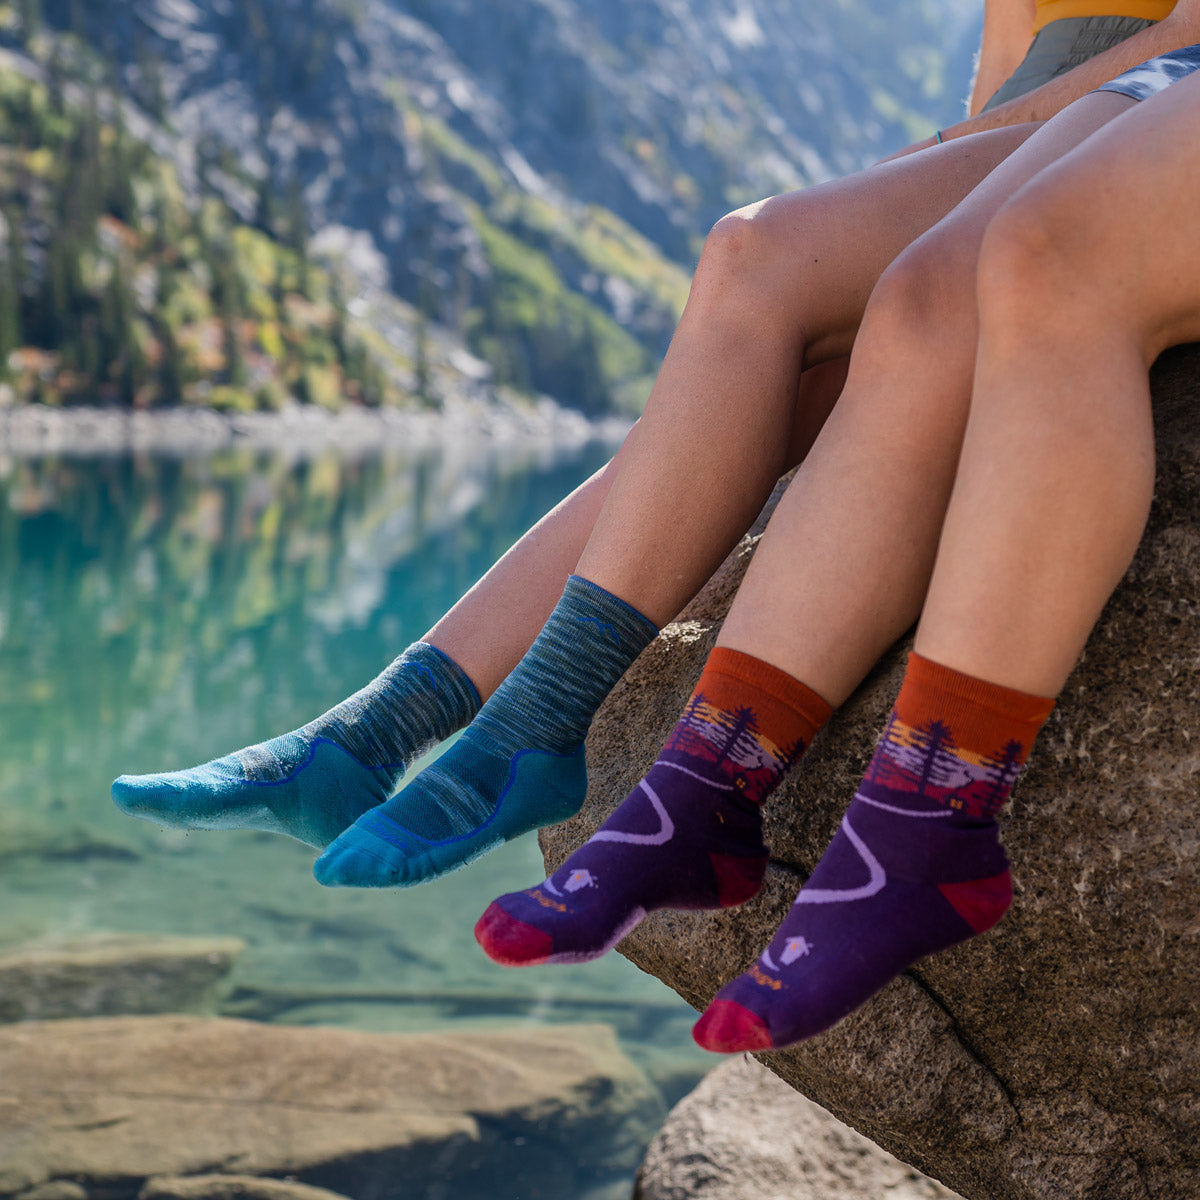 Two women wear Darn Tough socks in an outdoor setting beside a lake